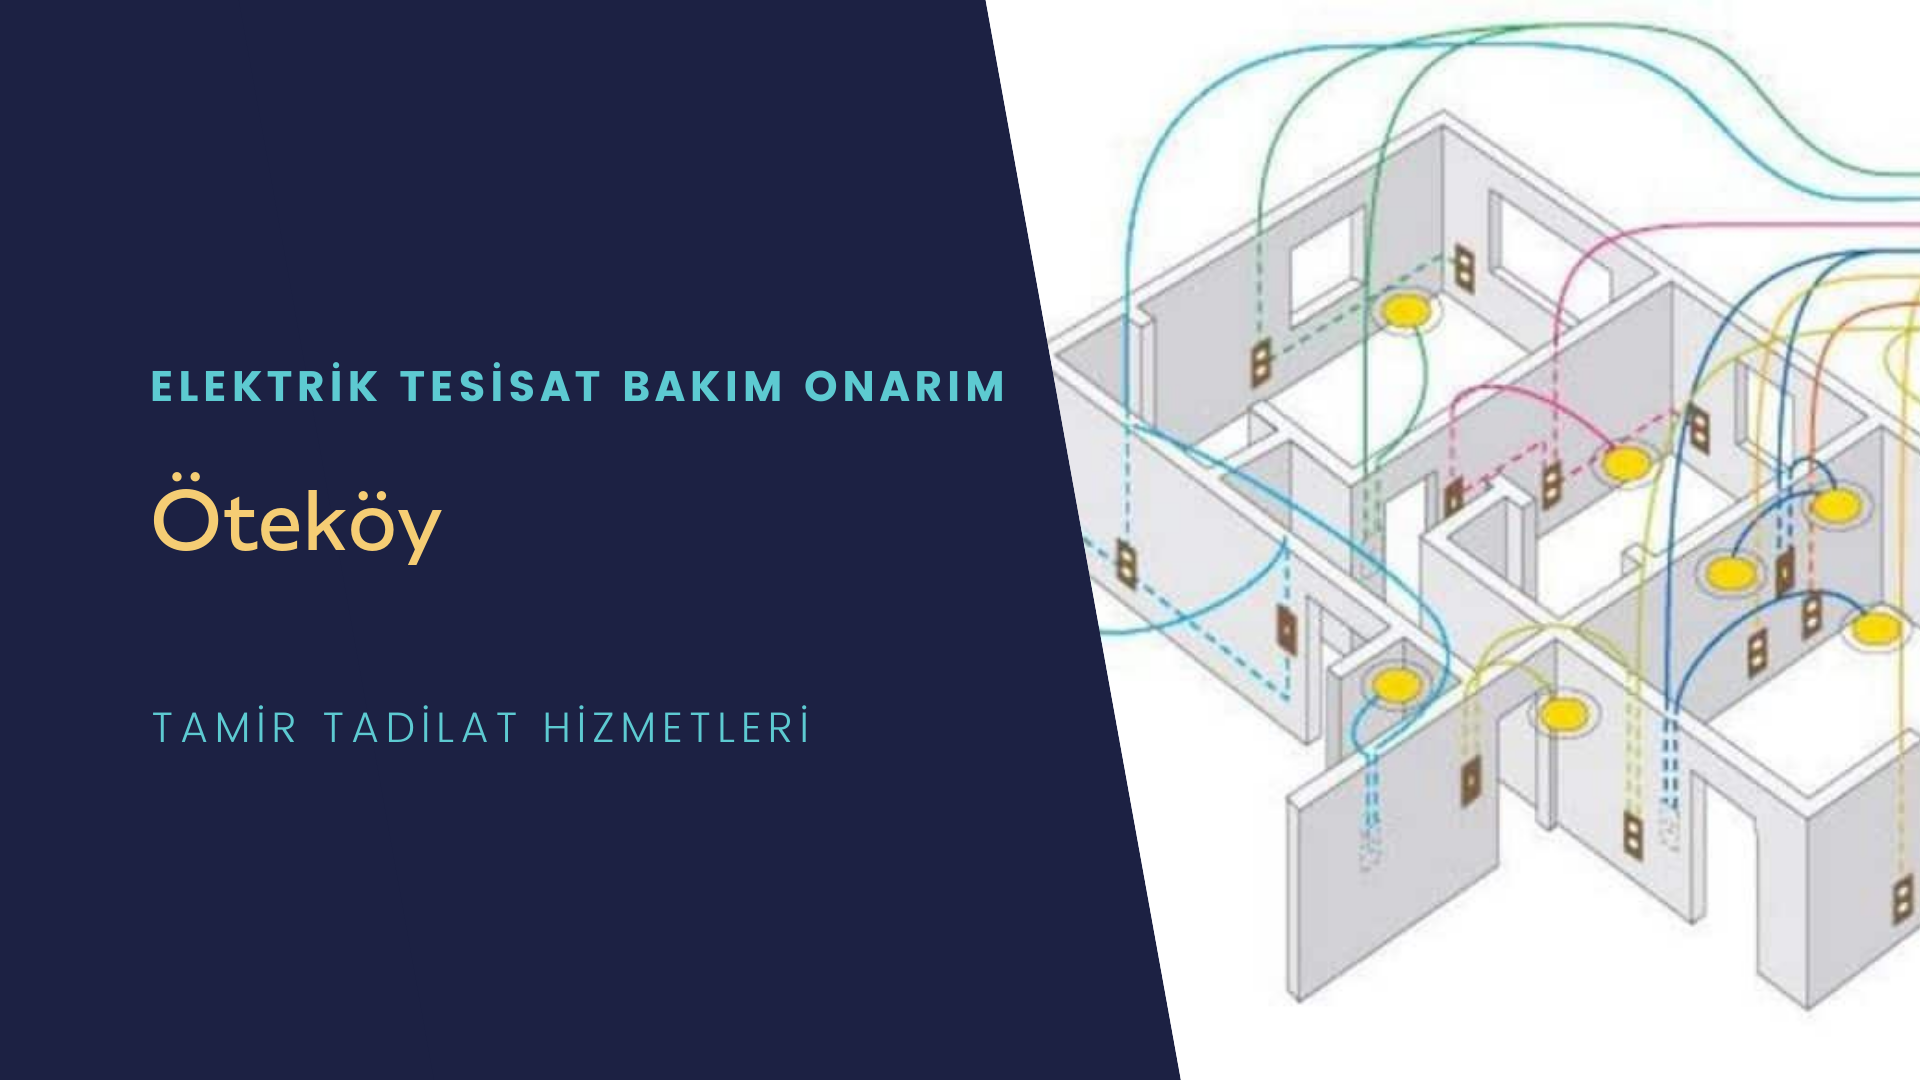 Öteköy'de elektrik tesisatı ustalarımı arıyorsunuz doğru adrestenizi Öteköy elektrik tesisatı ustalarımız 7/24 sizlere hizmet vermekten mutluluk duyar.